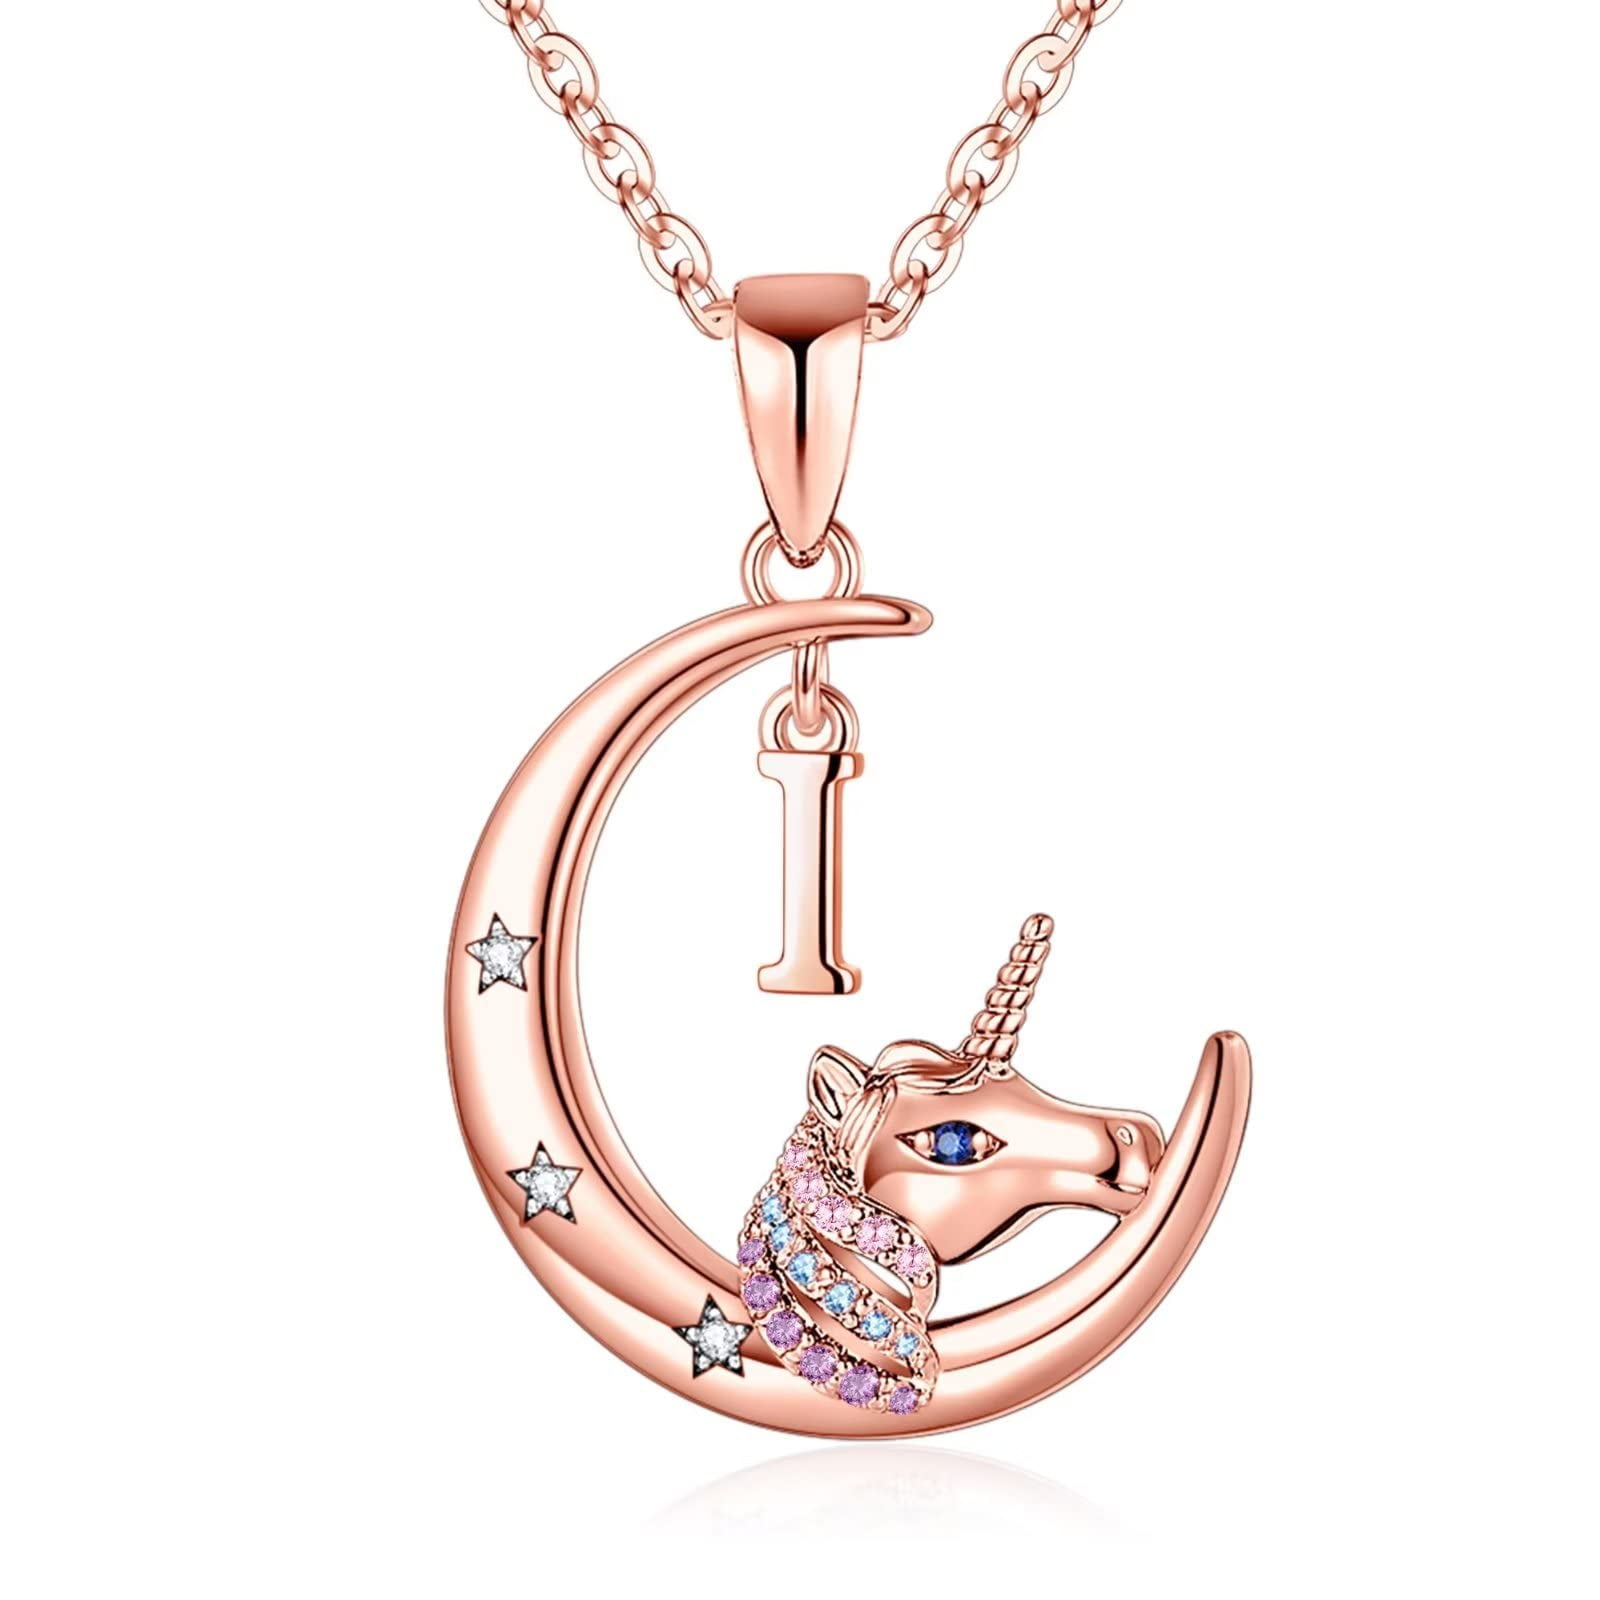 Personalized Unicorn Necklace. Little Girls Jewelry. Unicorn Gifts 18+ 2